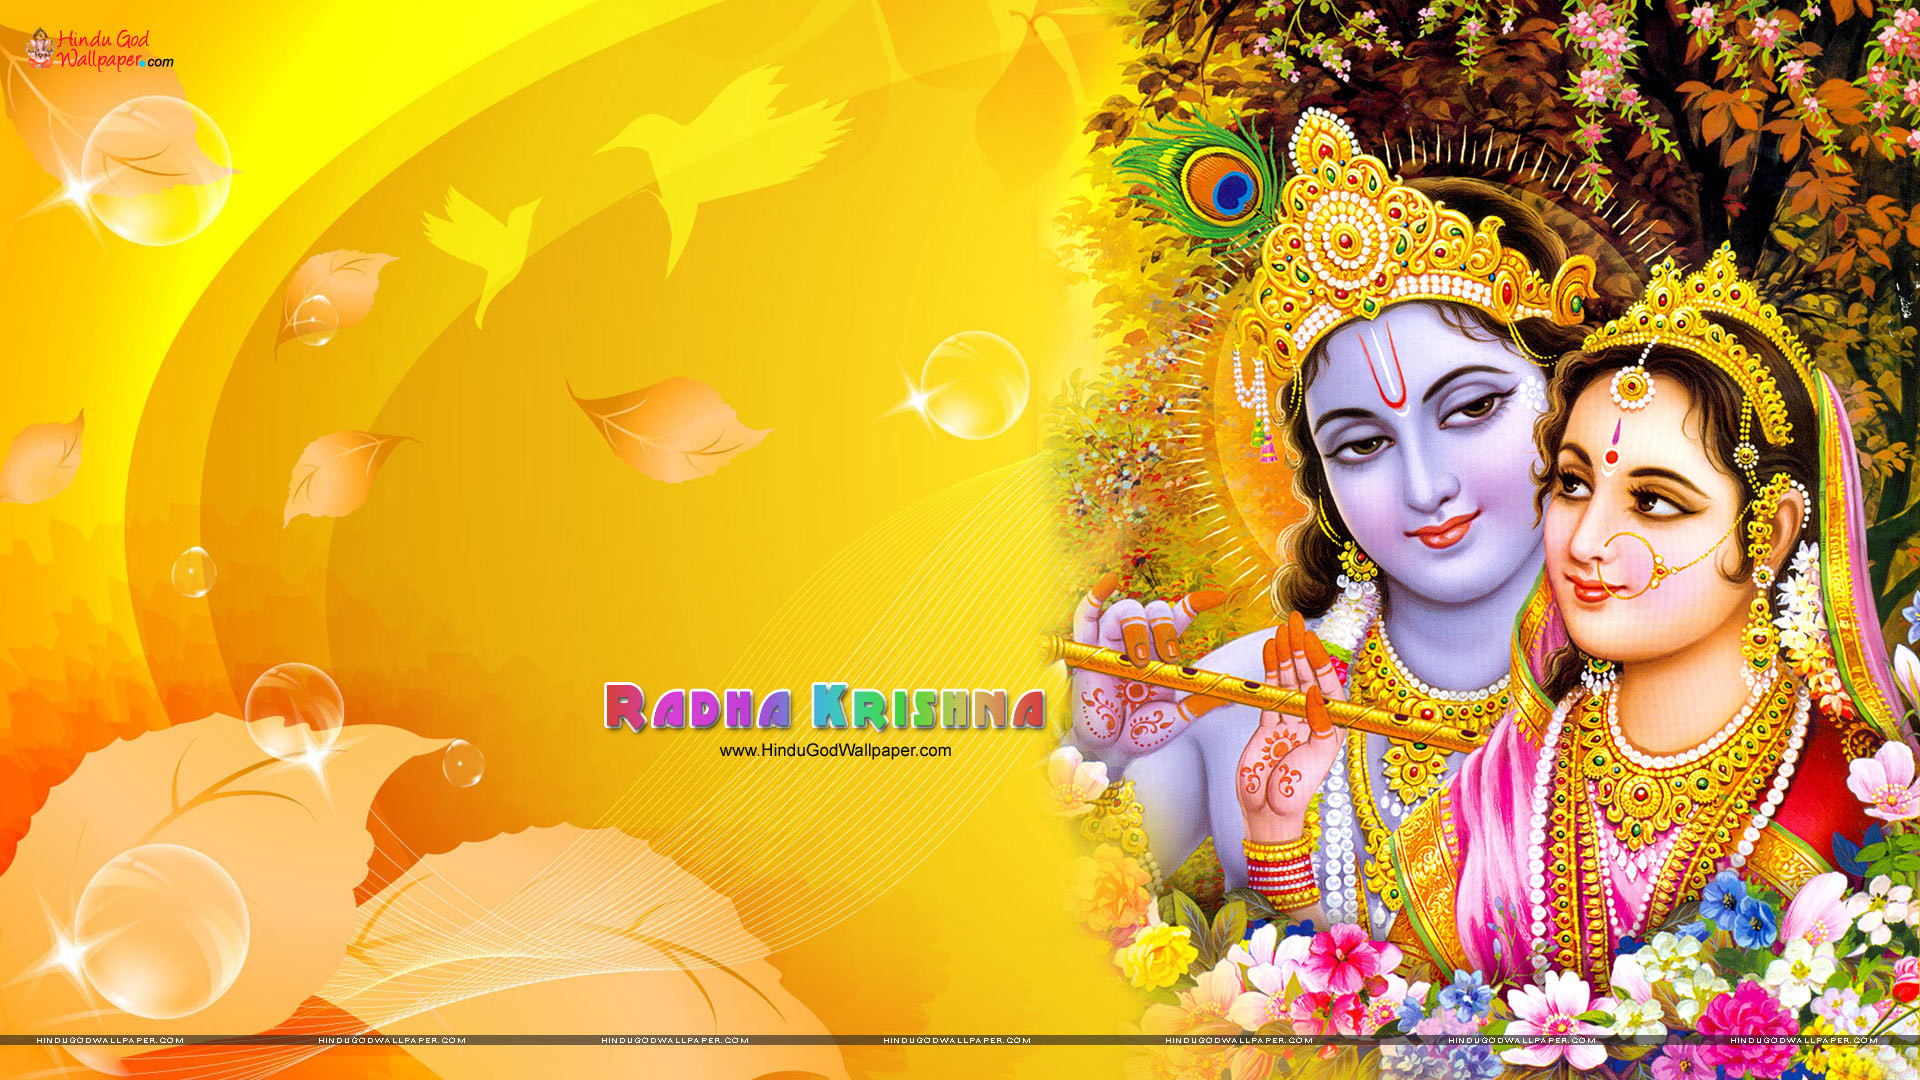 45+ Wallpaper Cave Radha Krishna Serial Images Hd Download Gif - Bryan